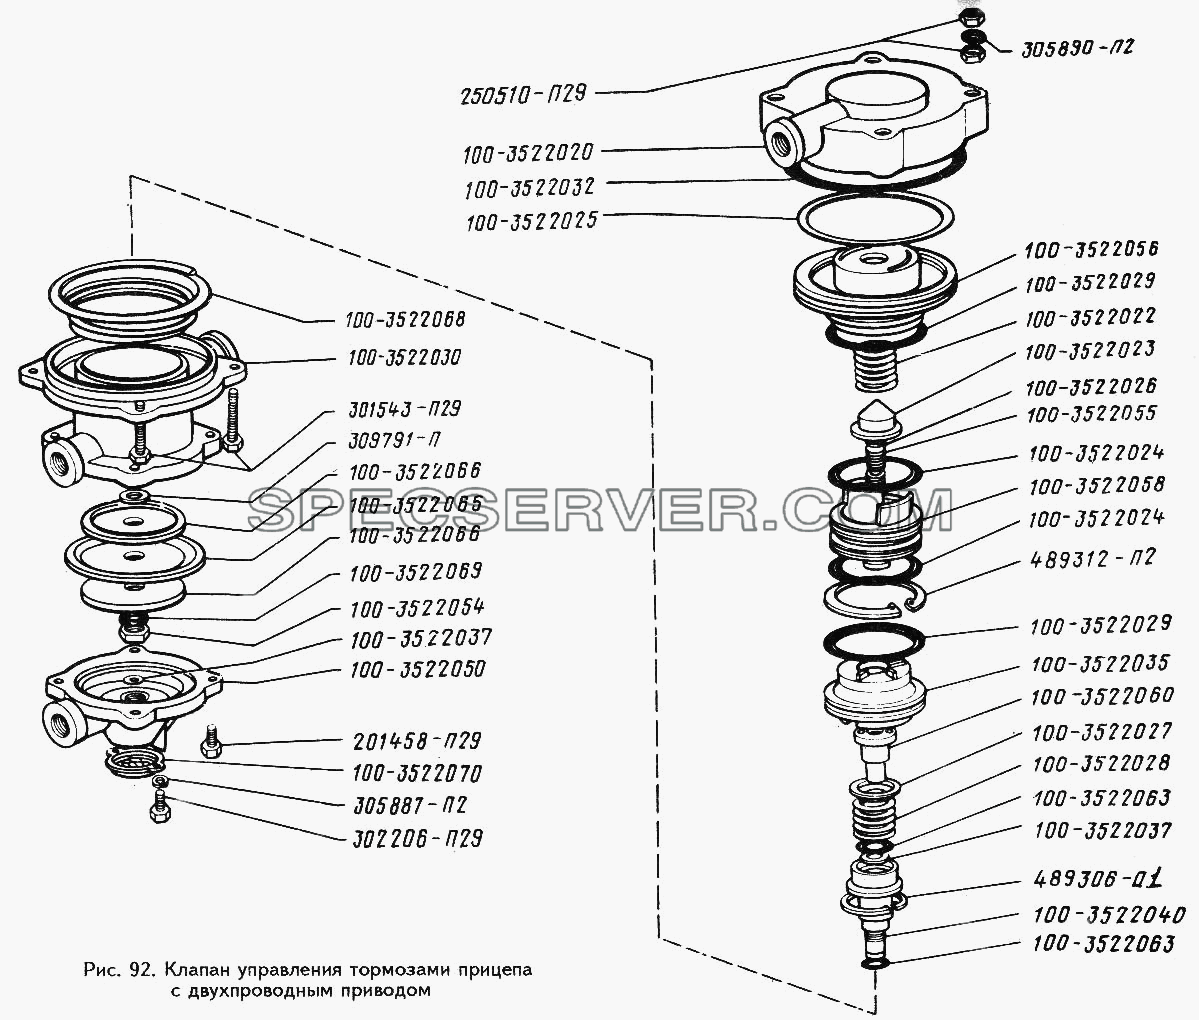 Клапан управления тормозами прицепа с двухпроводным приводом для ЗИЛ 442160 (список запасных частей)